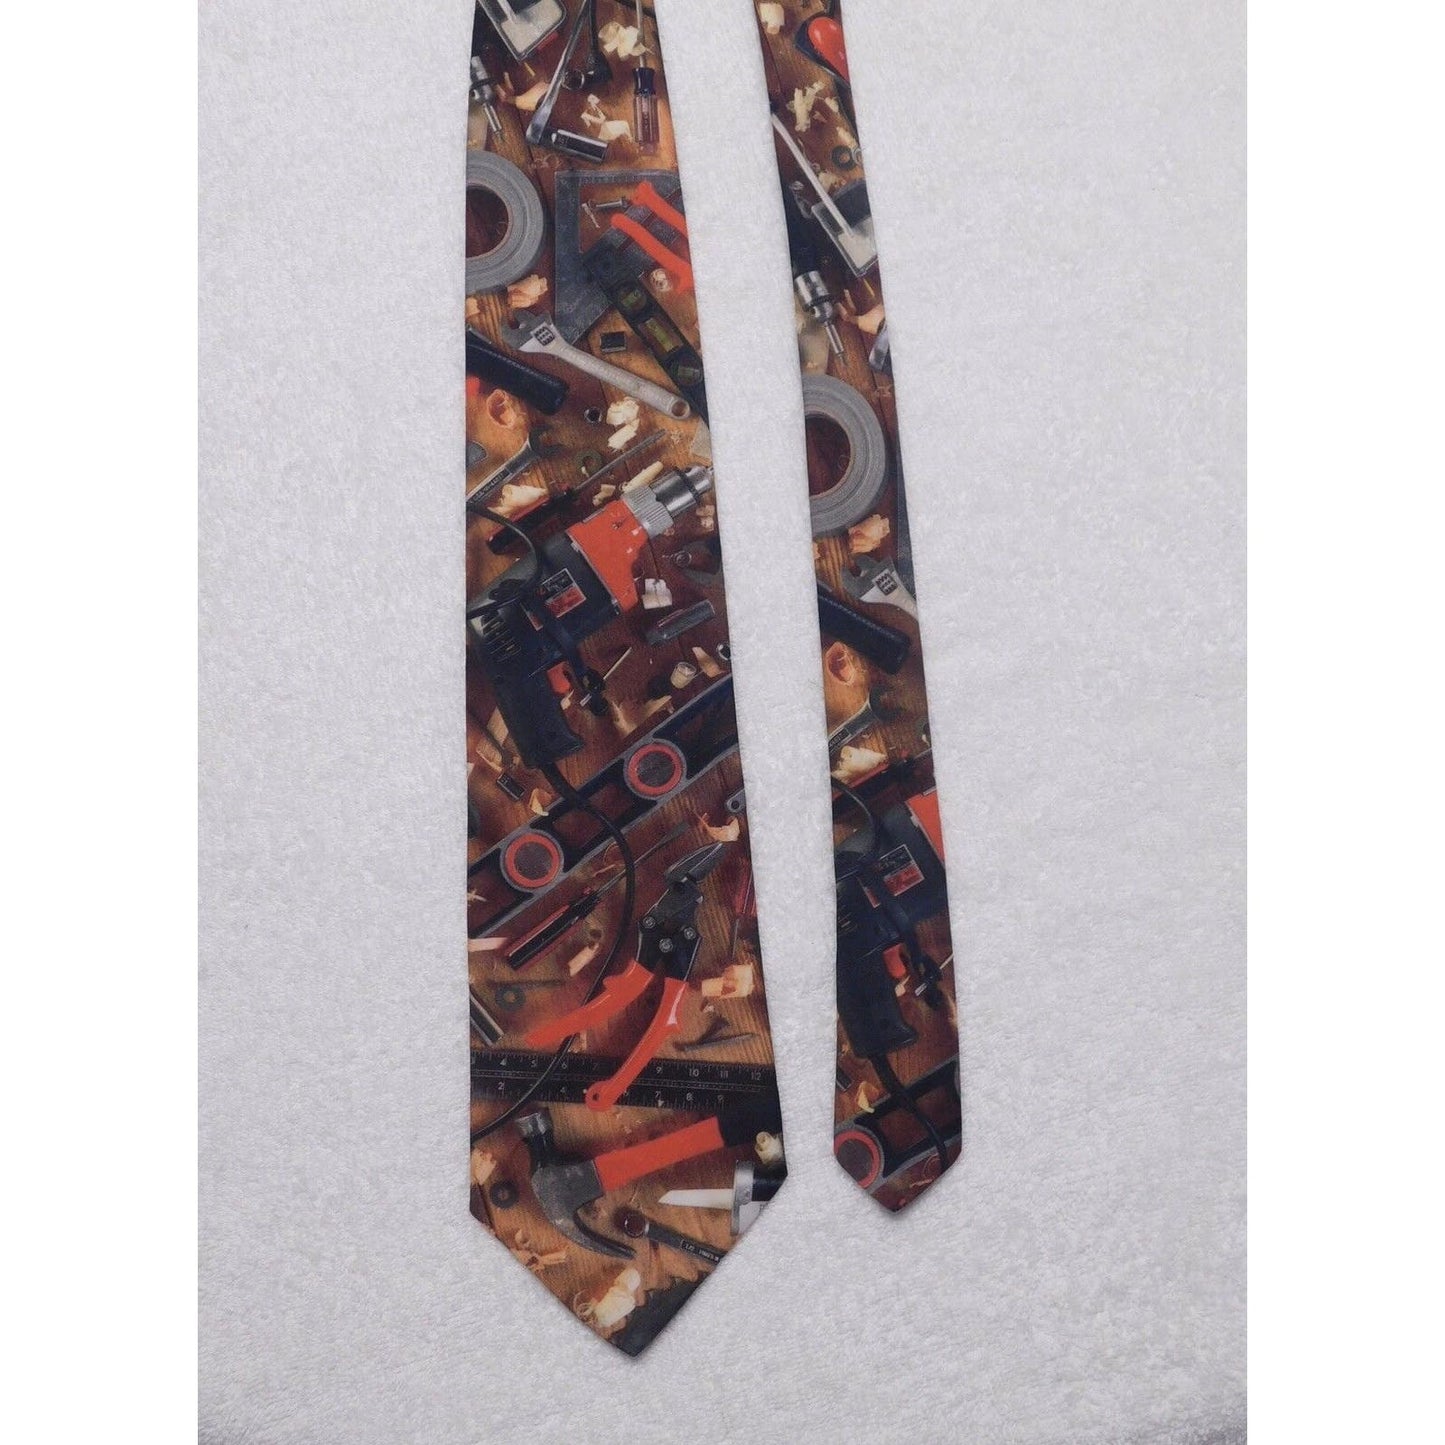 vintage 1996 Ralph Marlin "Handyman Tools" Men's Necktie Tie Polyester